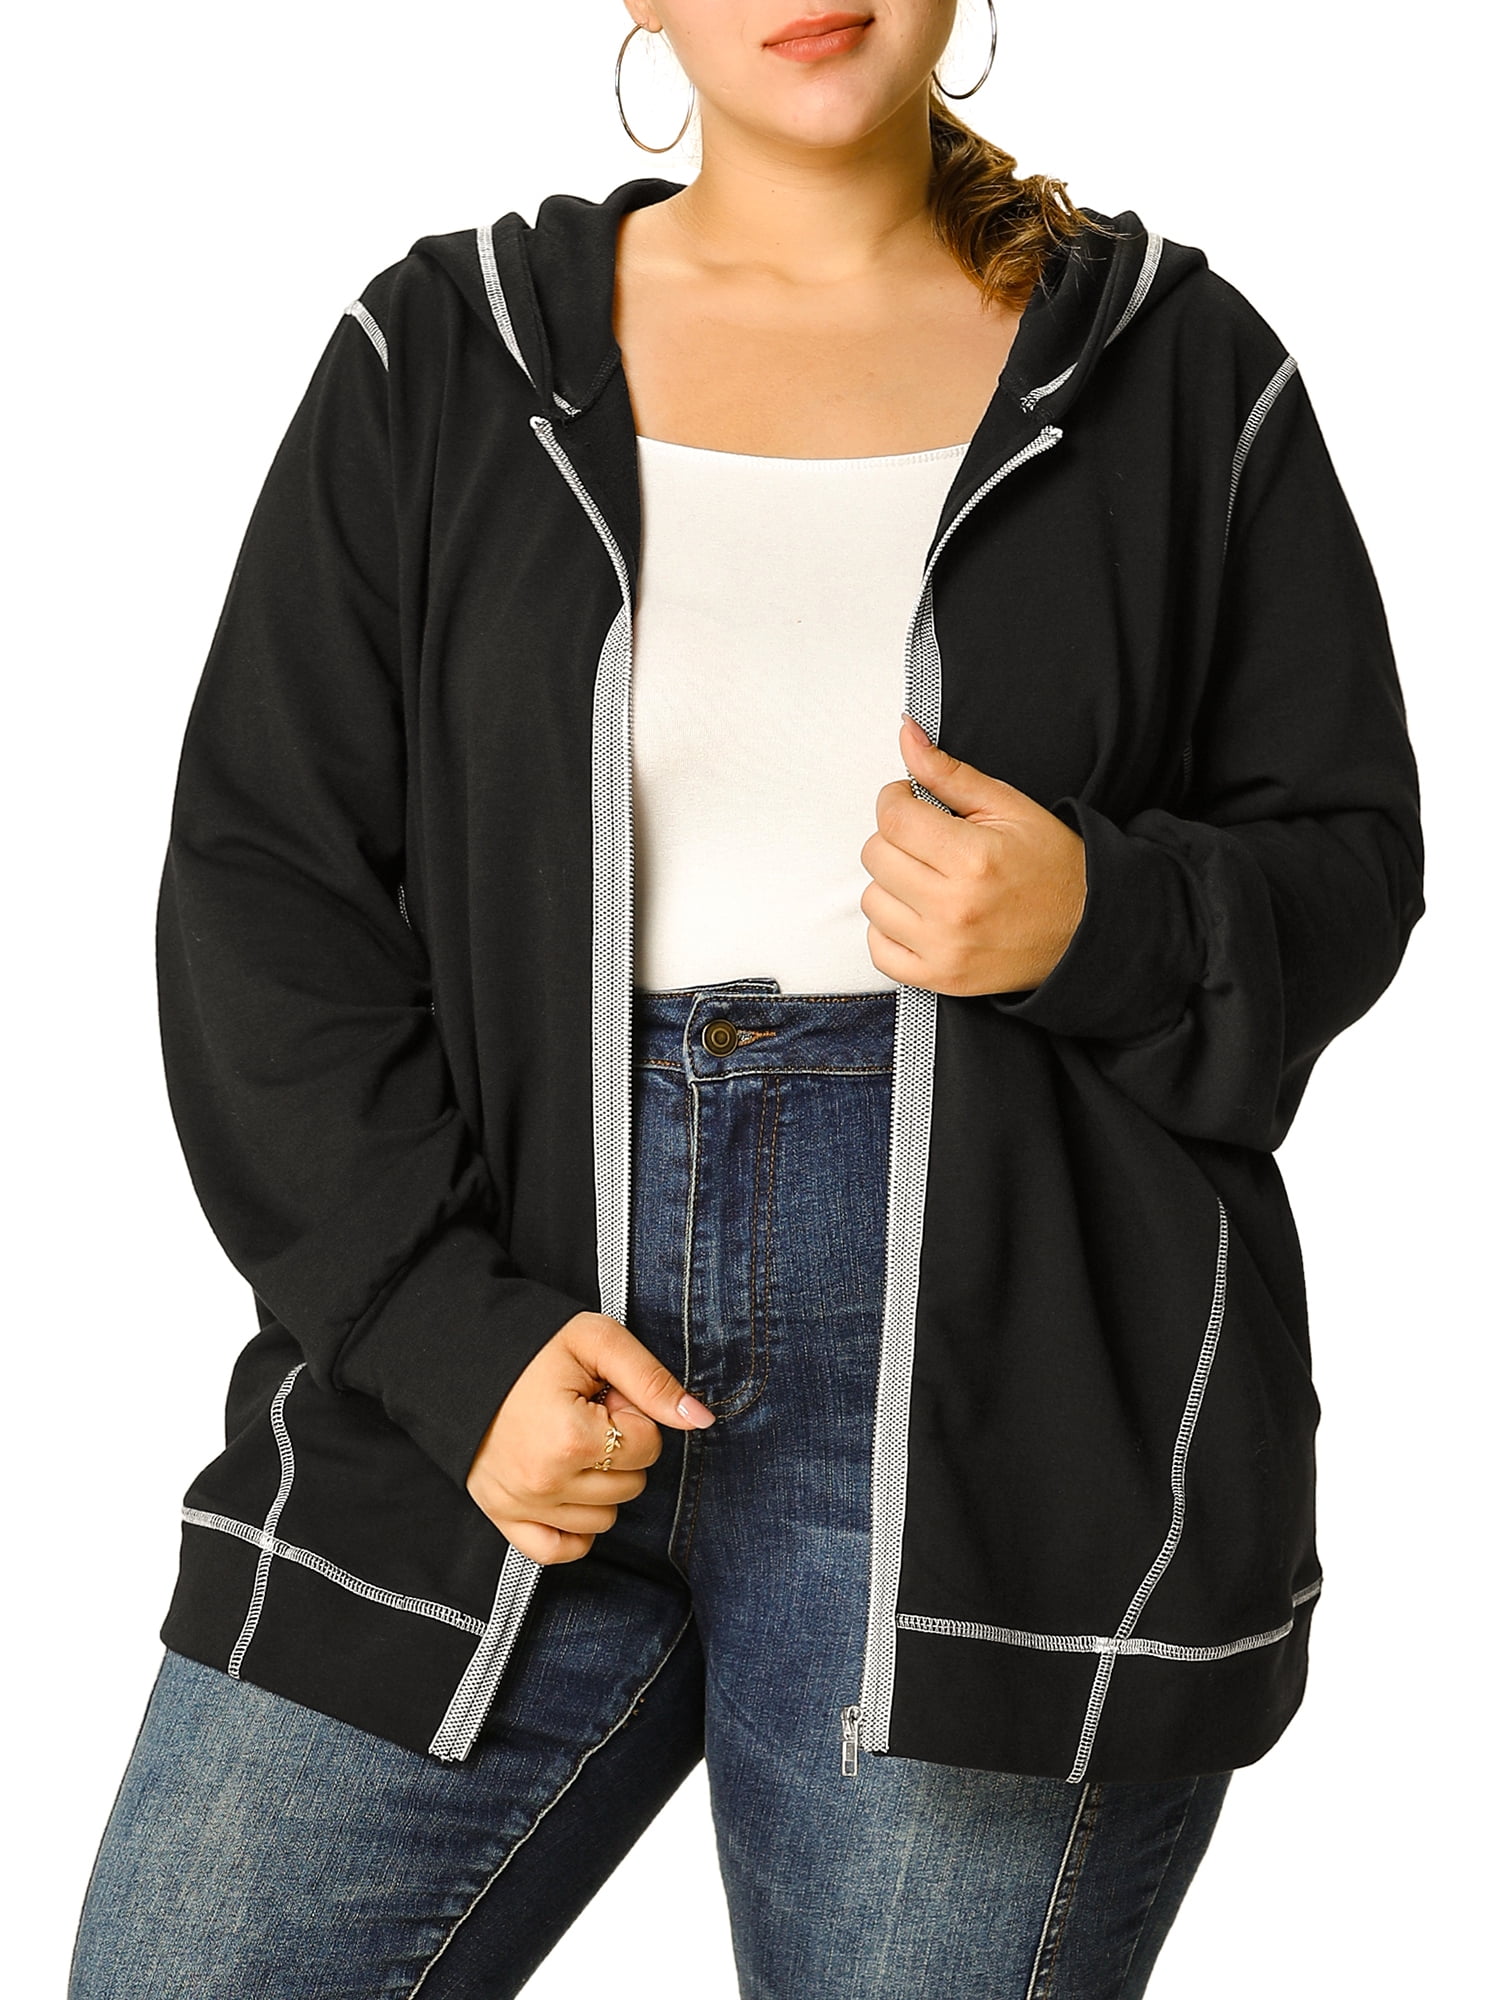 USA Women Girl Fleece Cardigan Long Sleeve  Outwear Tassel Casual Jackets 